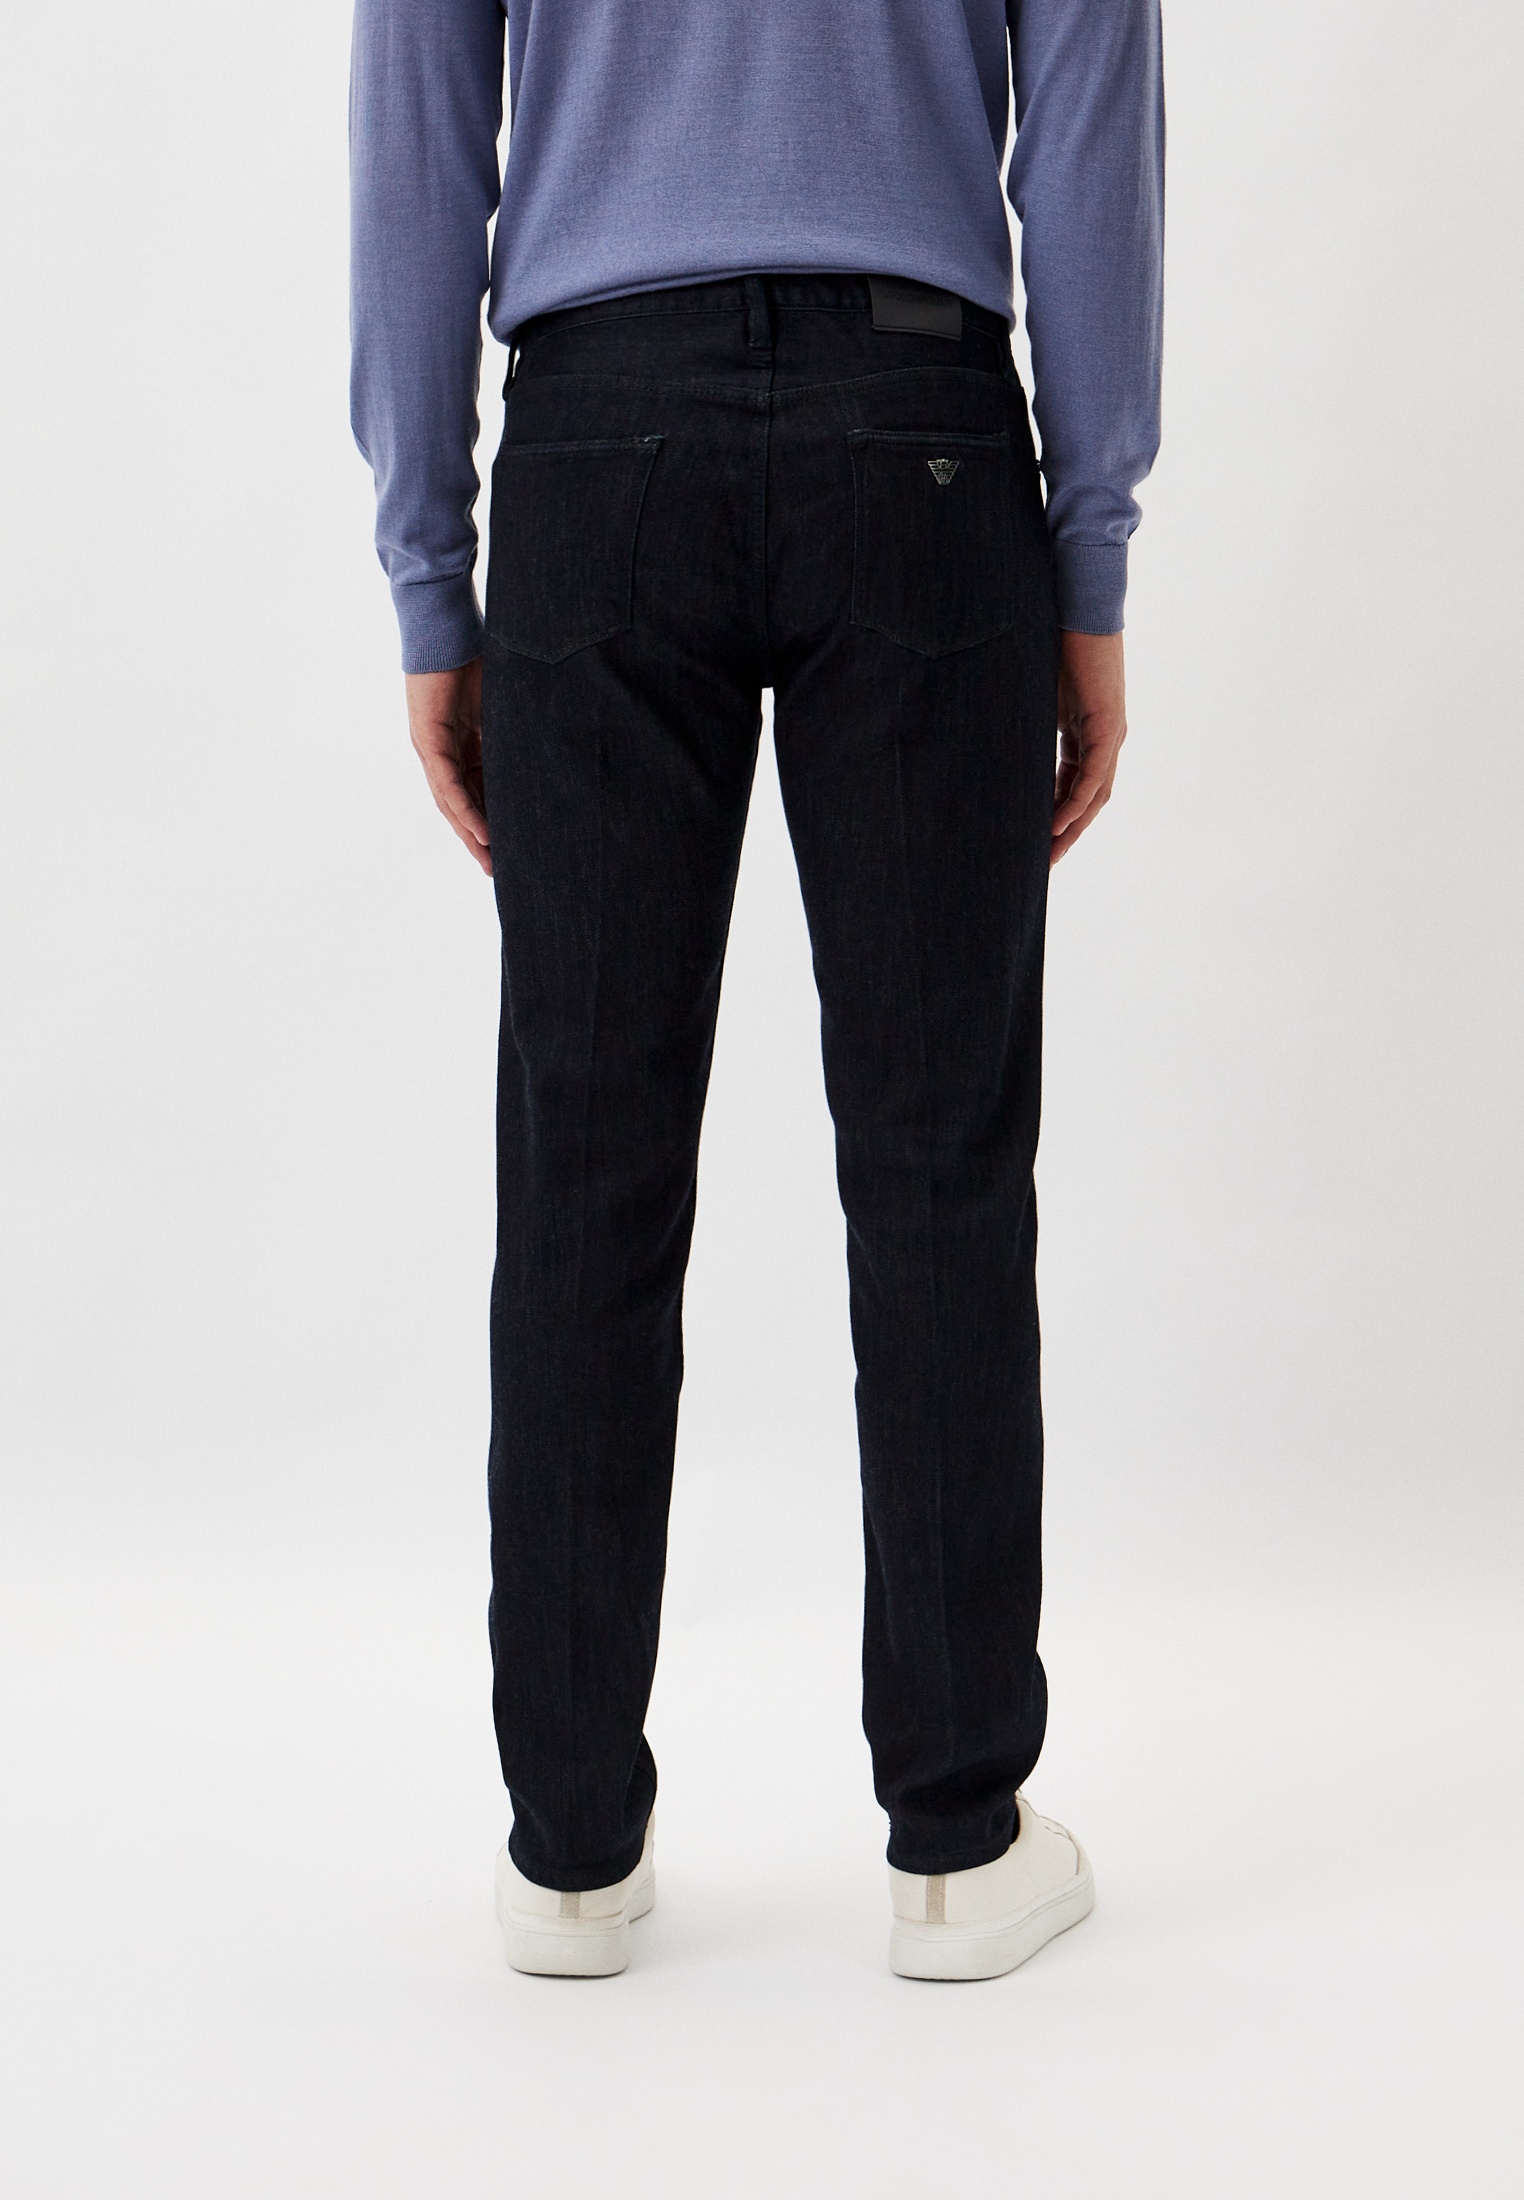 Мужские зауженные джинсы Emporio Armani (Эмпорио Армани) 6R1J75 1DQFZ: изображение 3